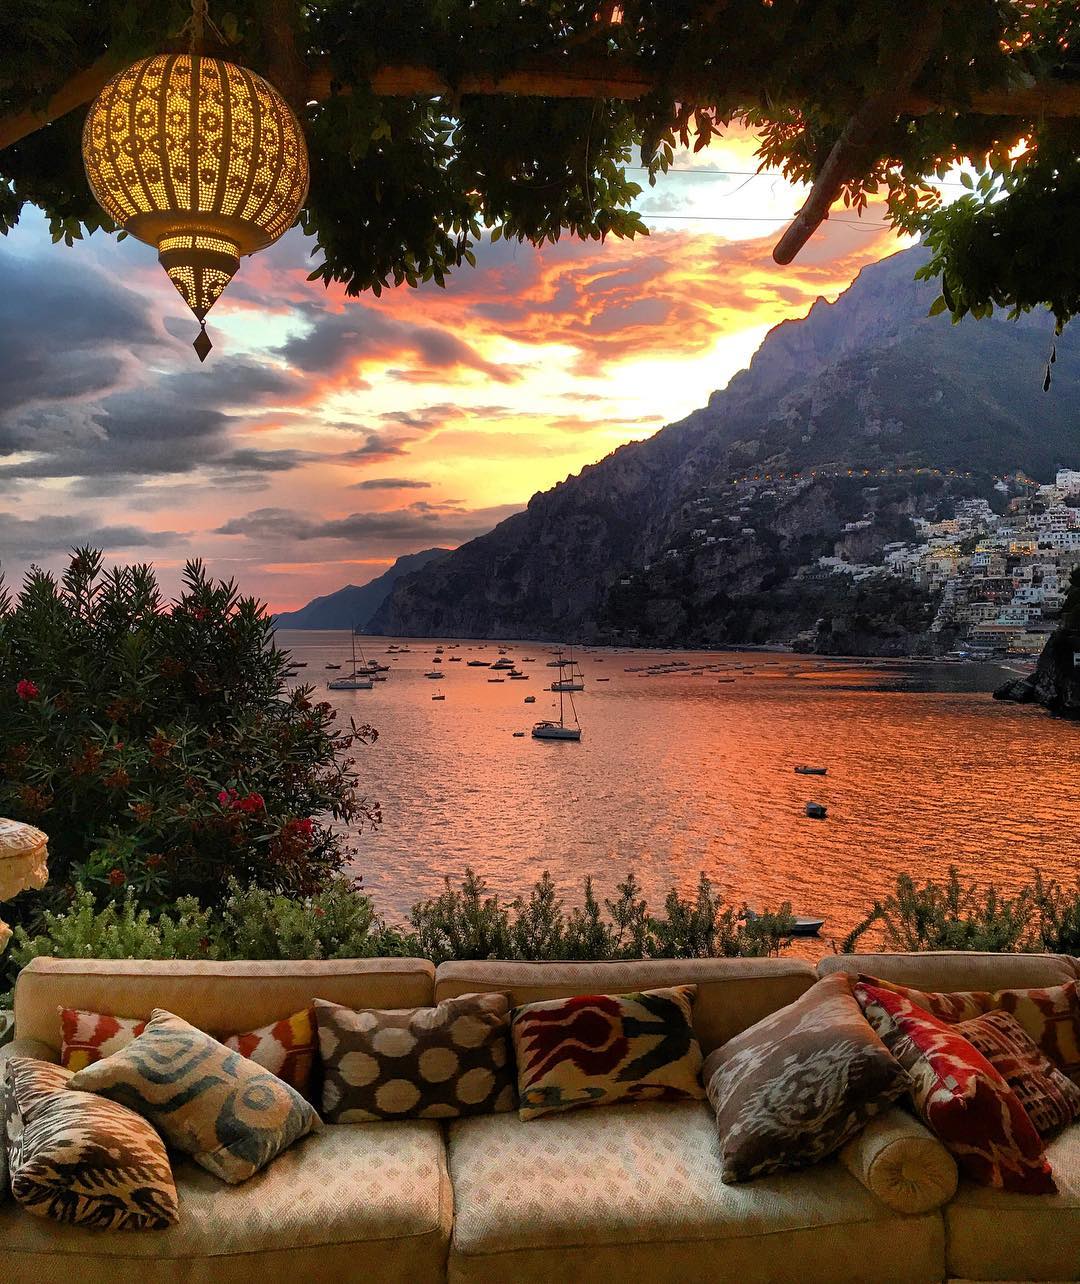 Positano and the Amalfi Coast seen from a shaded terrace, Campania, Italy.